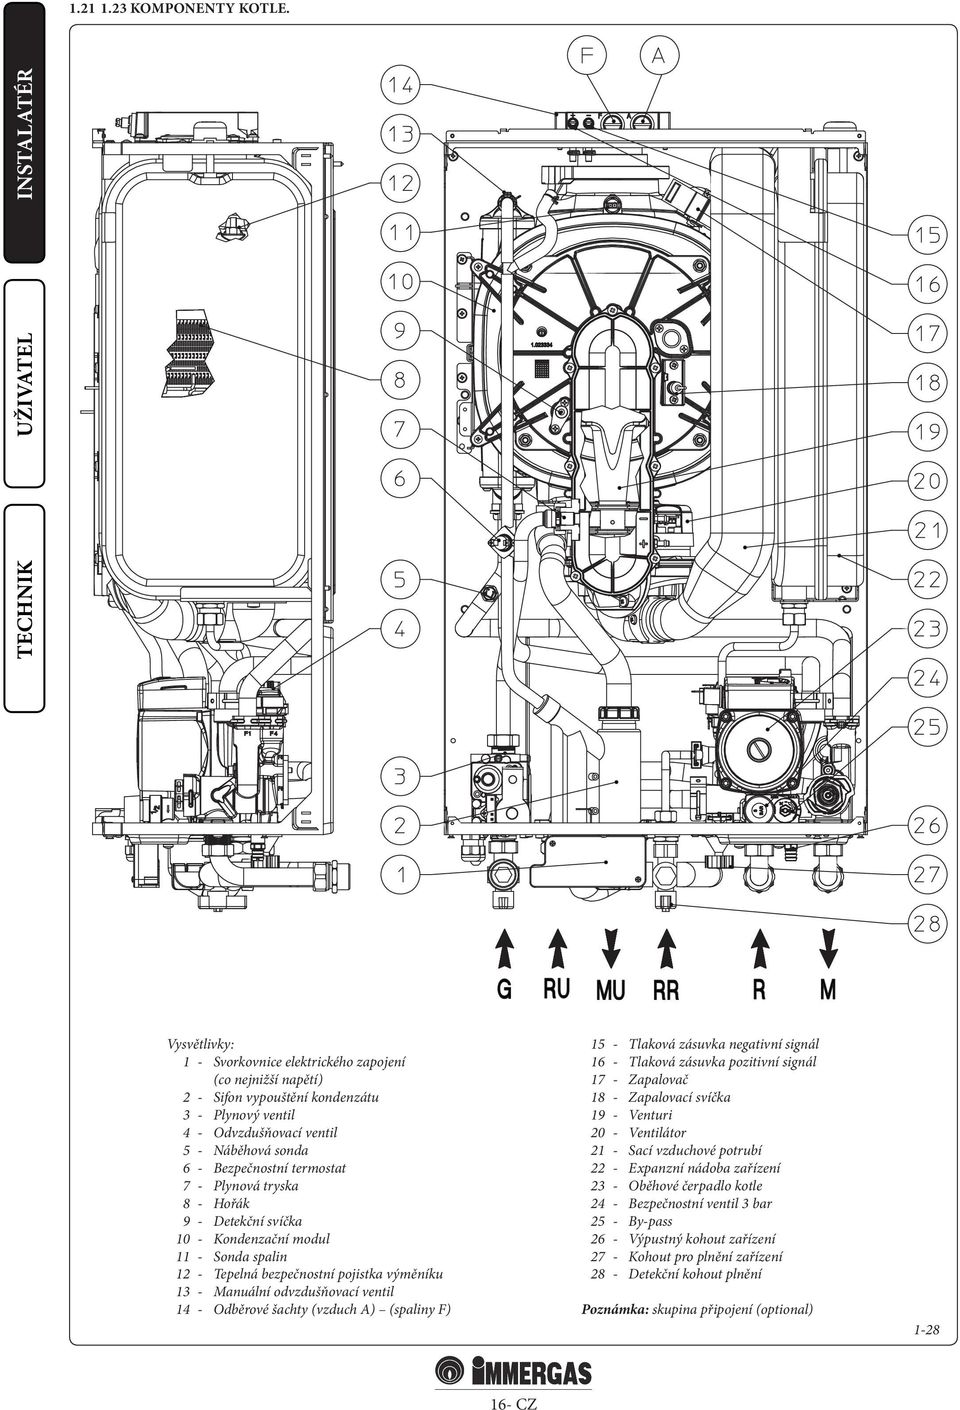 Plynová tryska 8 - Hořák 9 - Detekční svíčka 10 - Kondenzační modul 11 - Sonda spalin 12 - Tepelná bezpečnostní pojistka výměníku 13 - Manuální odvzdušňovací ventil 14 - Odběrové šachty (vzduch A)